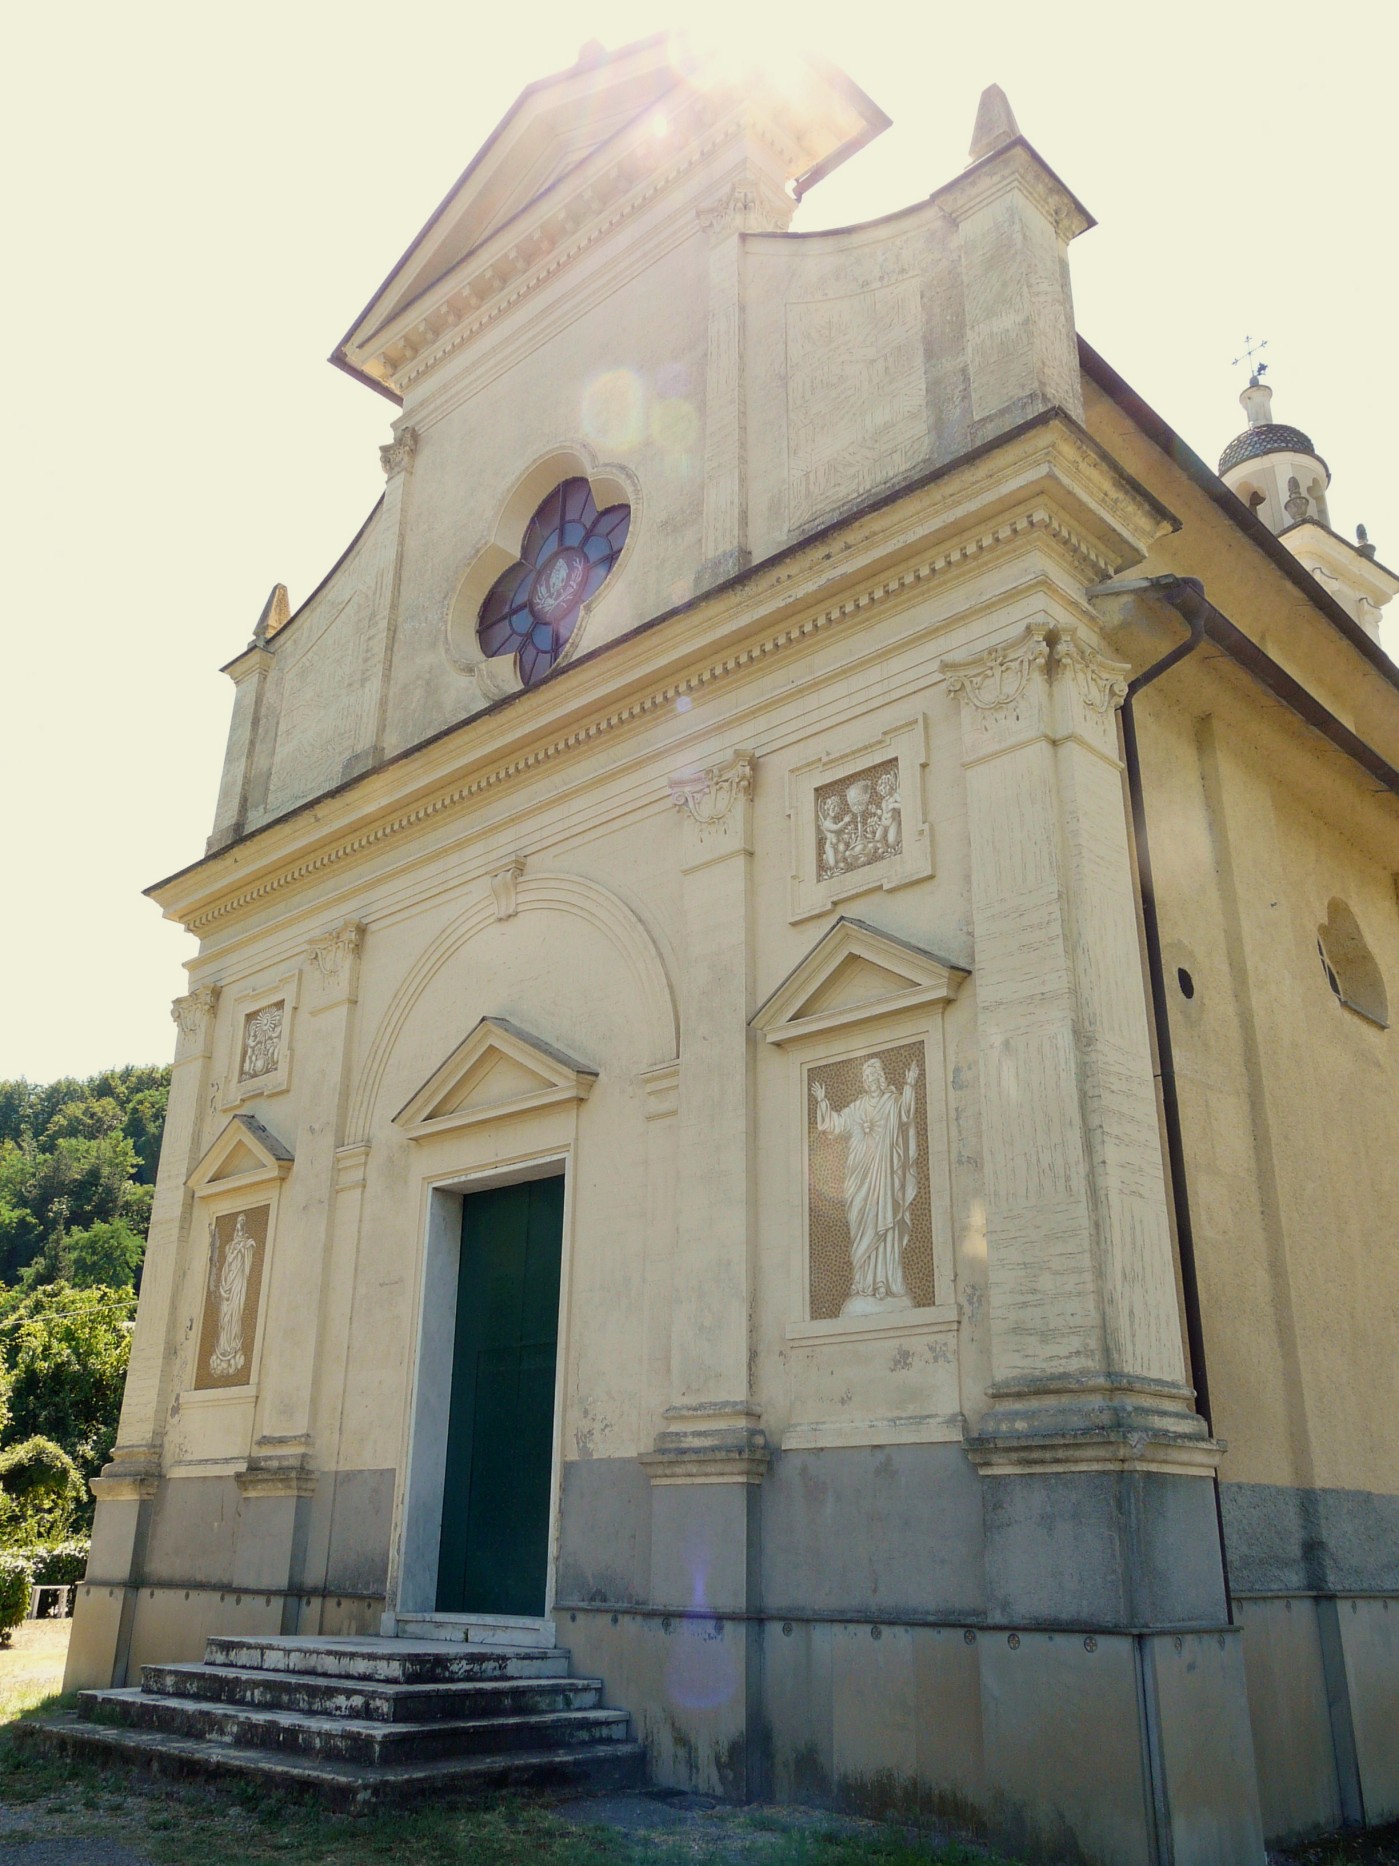 Chiesa San Martino